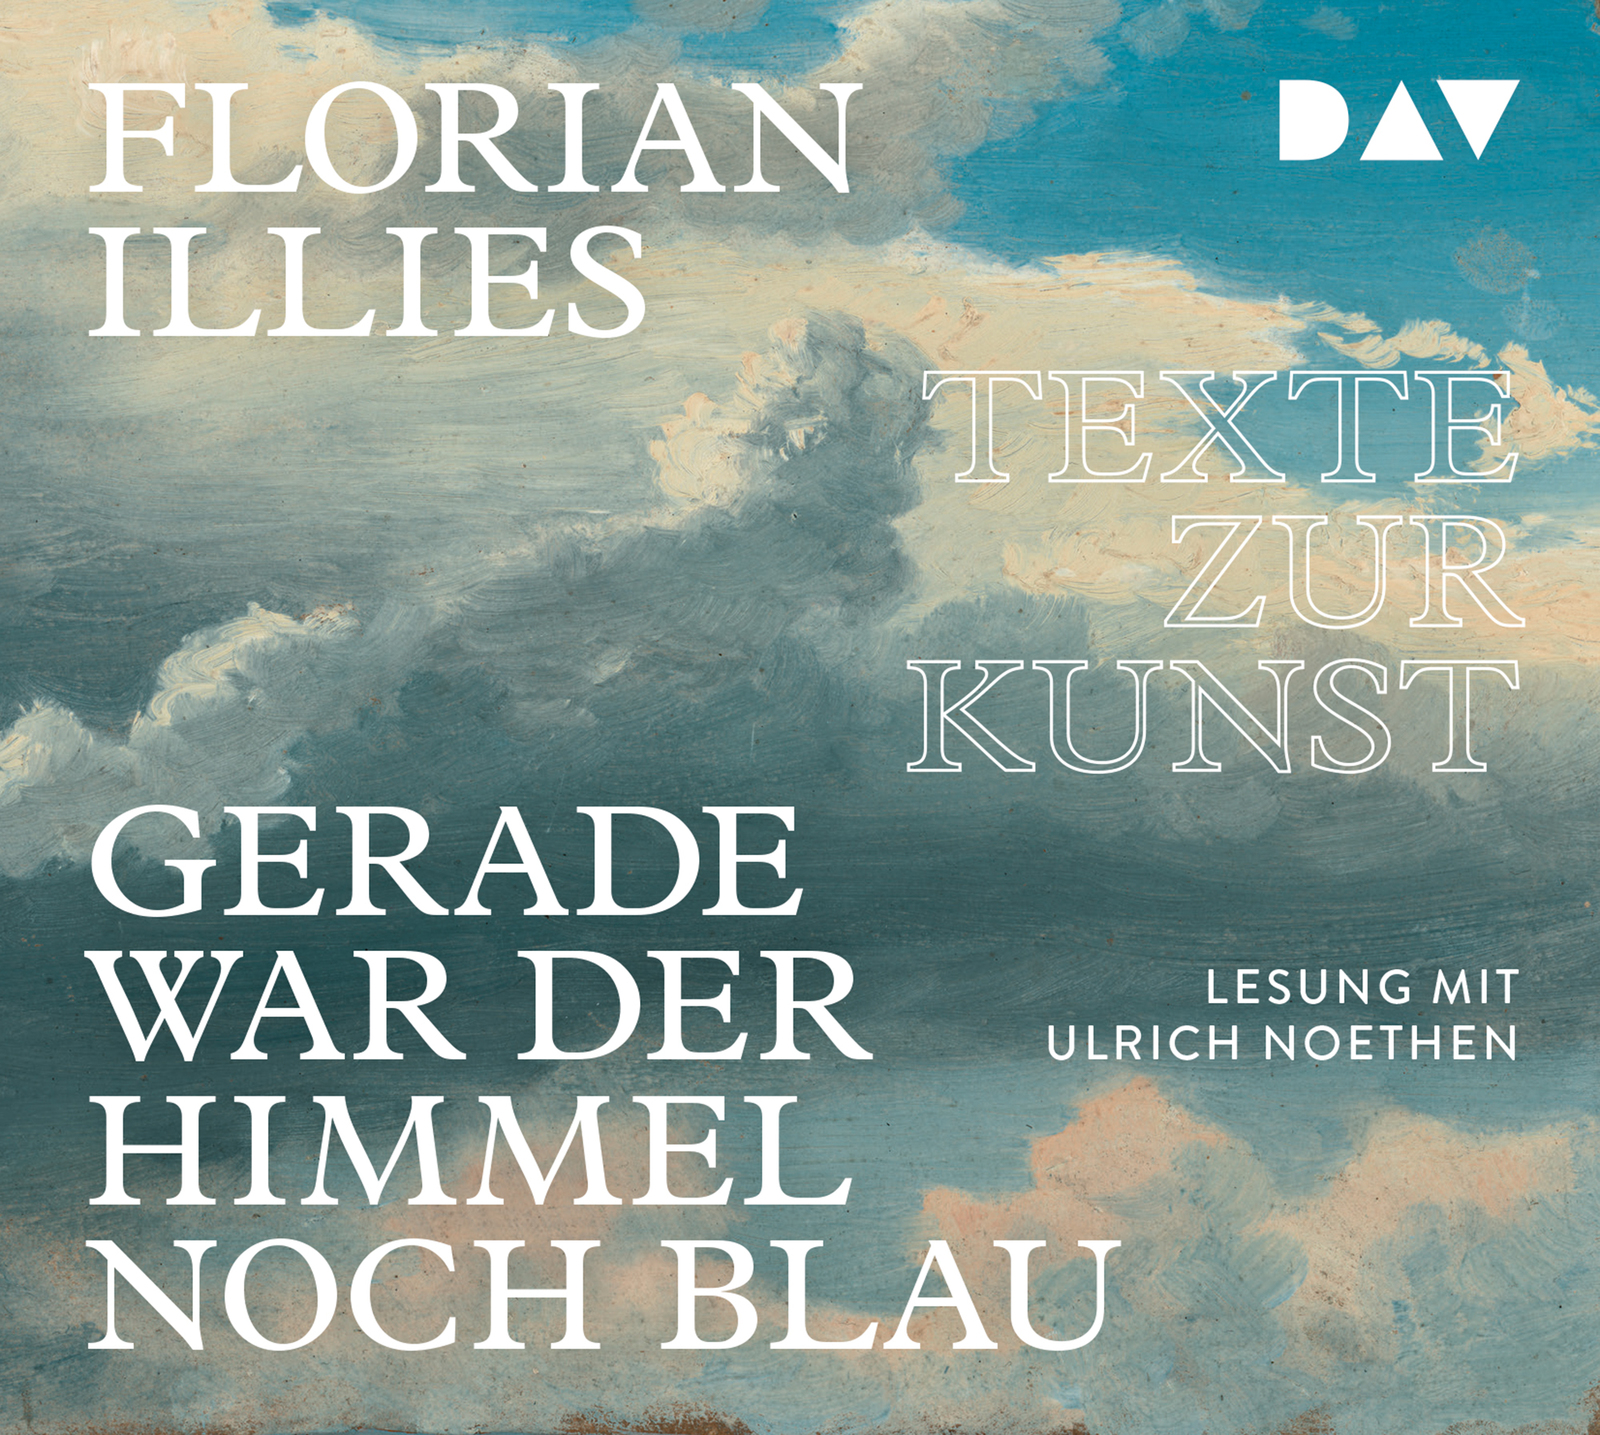 Gerade war der Himmel noch blau, Florian Illies, Ulricht Noethen, Texte zur Kunst, DAV